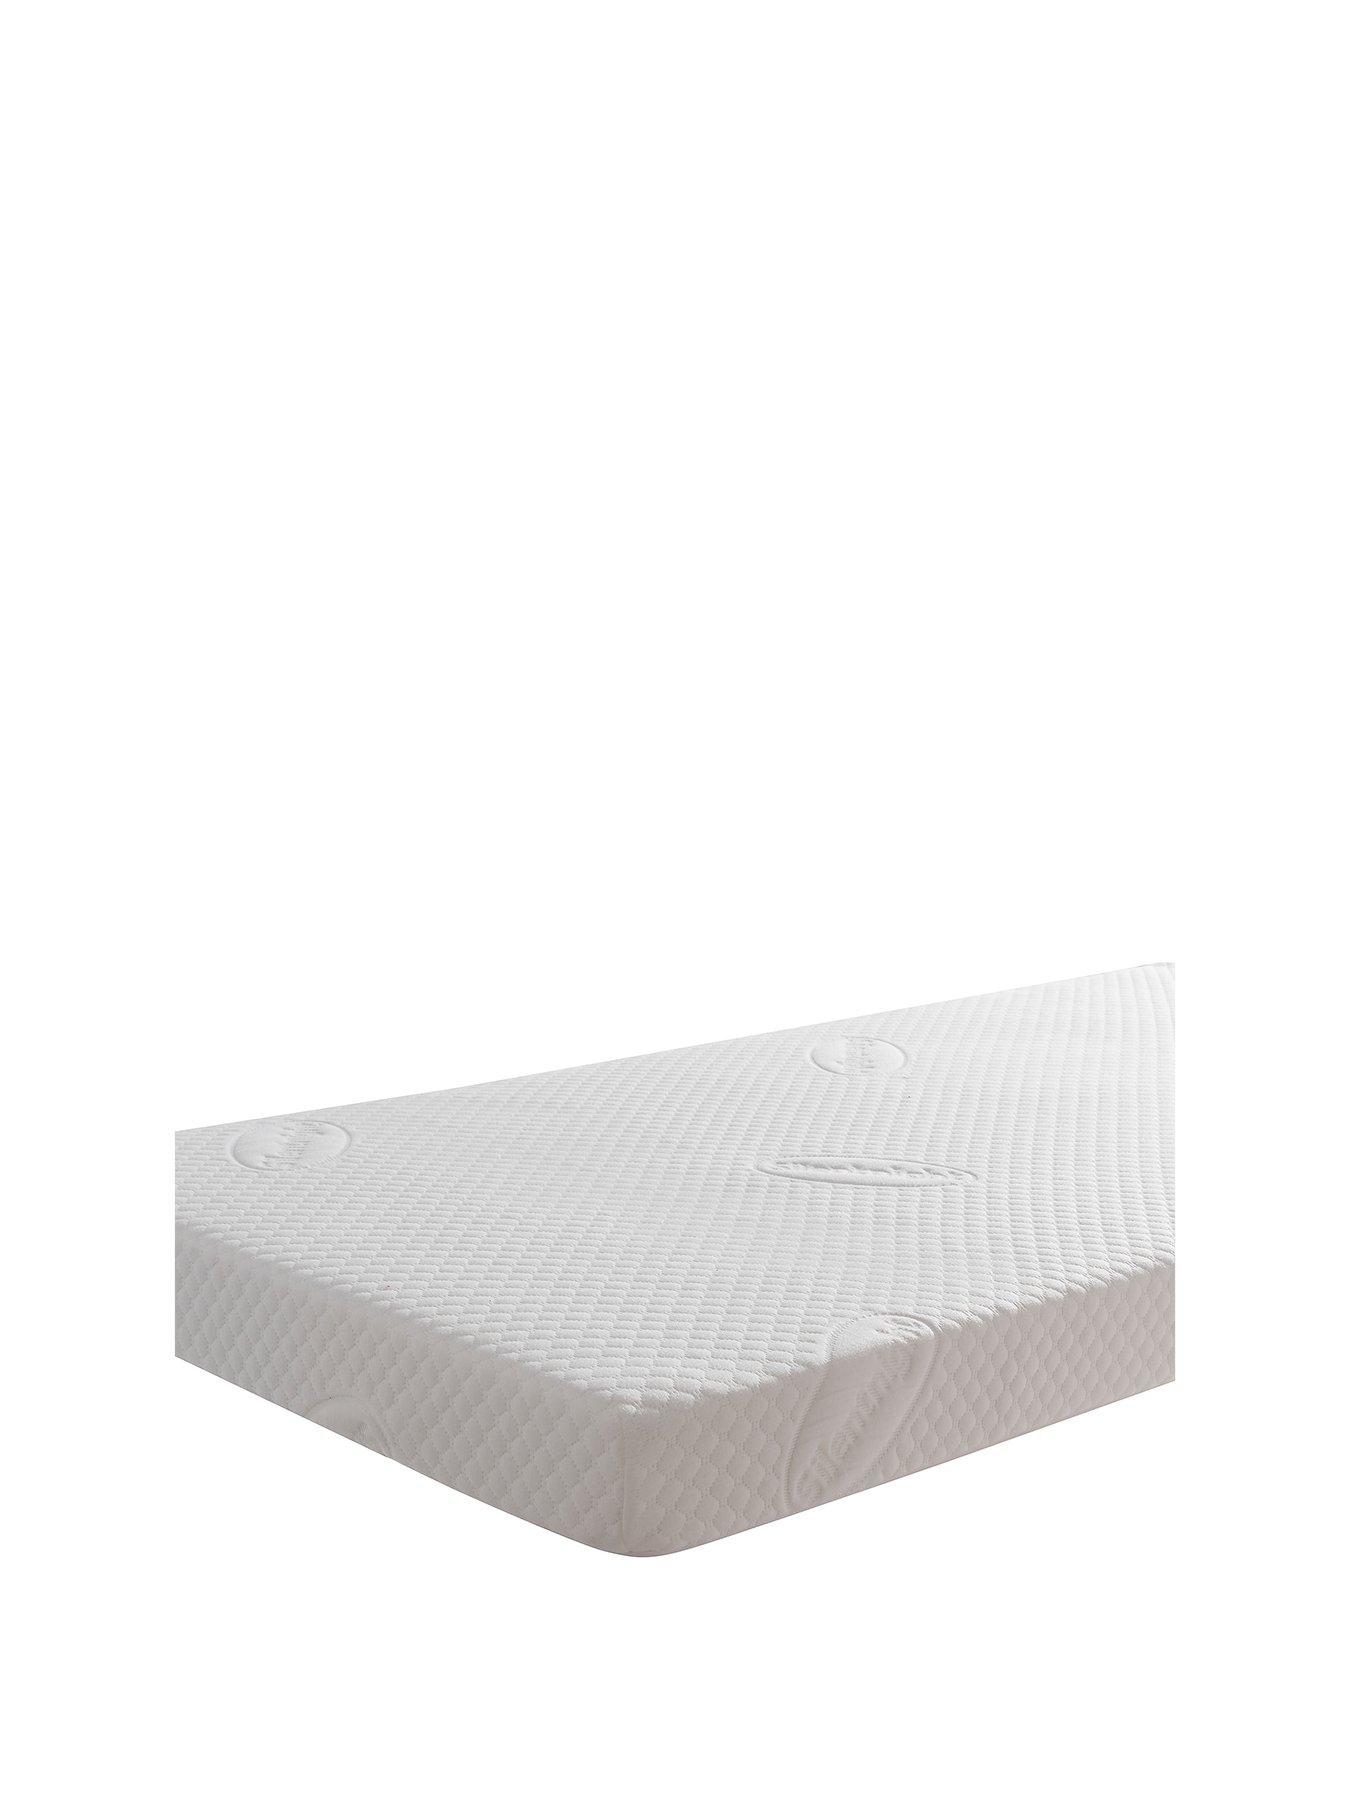 foam cot mattress big w